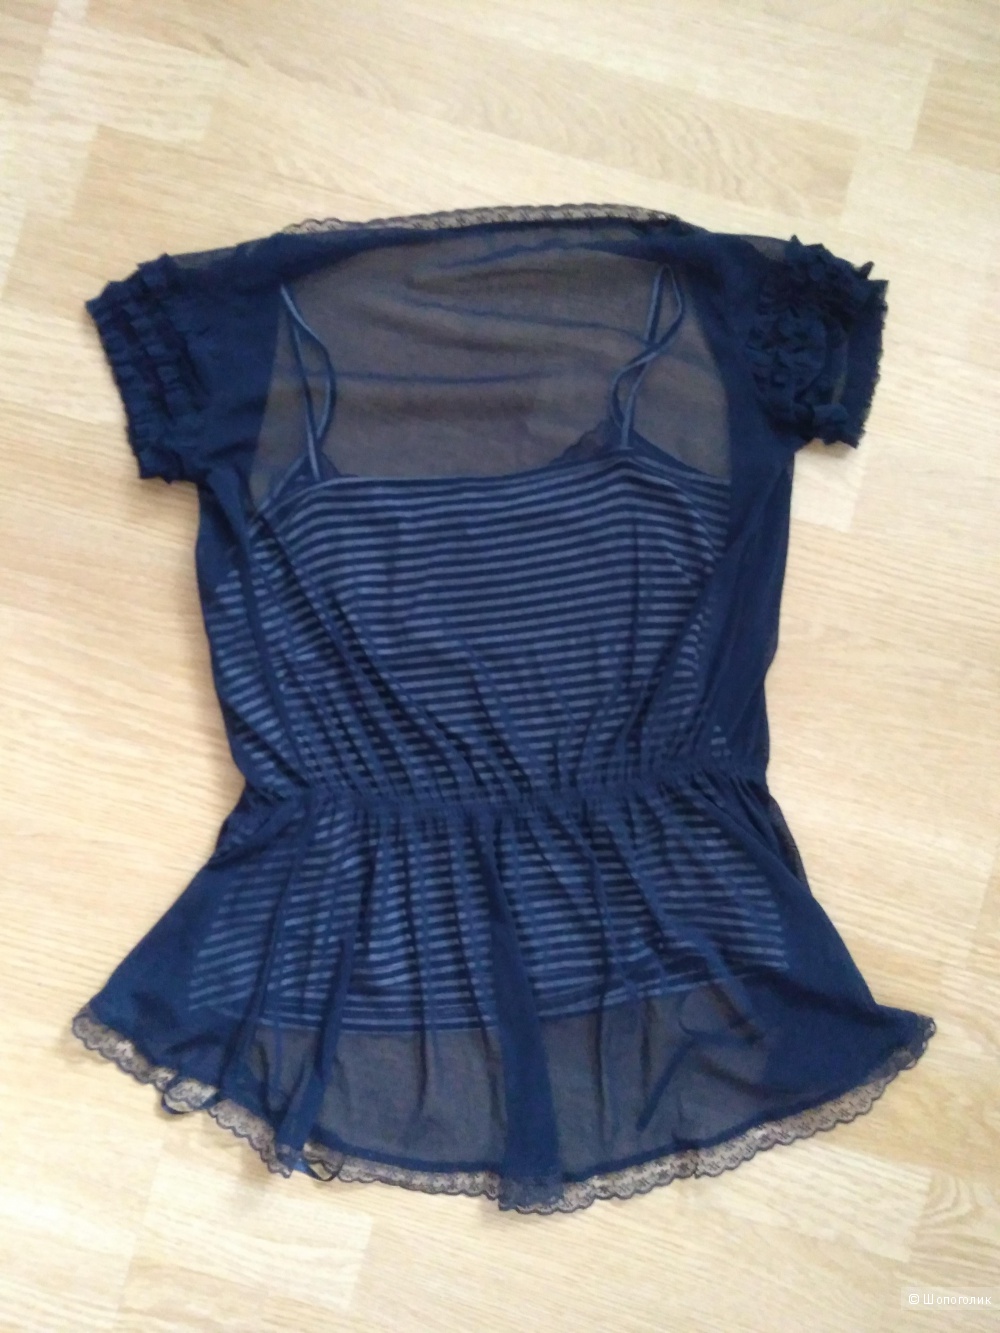 Комплект блузки и юбка Morgan размер 42-44